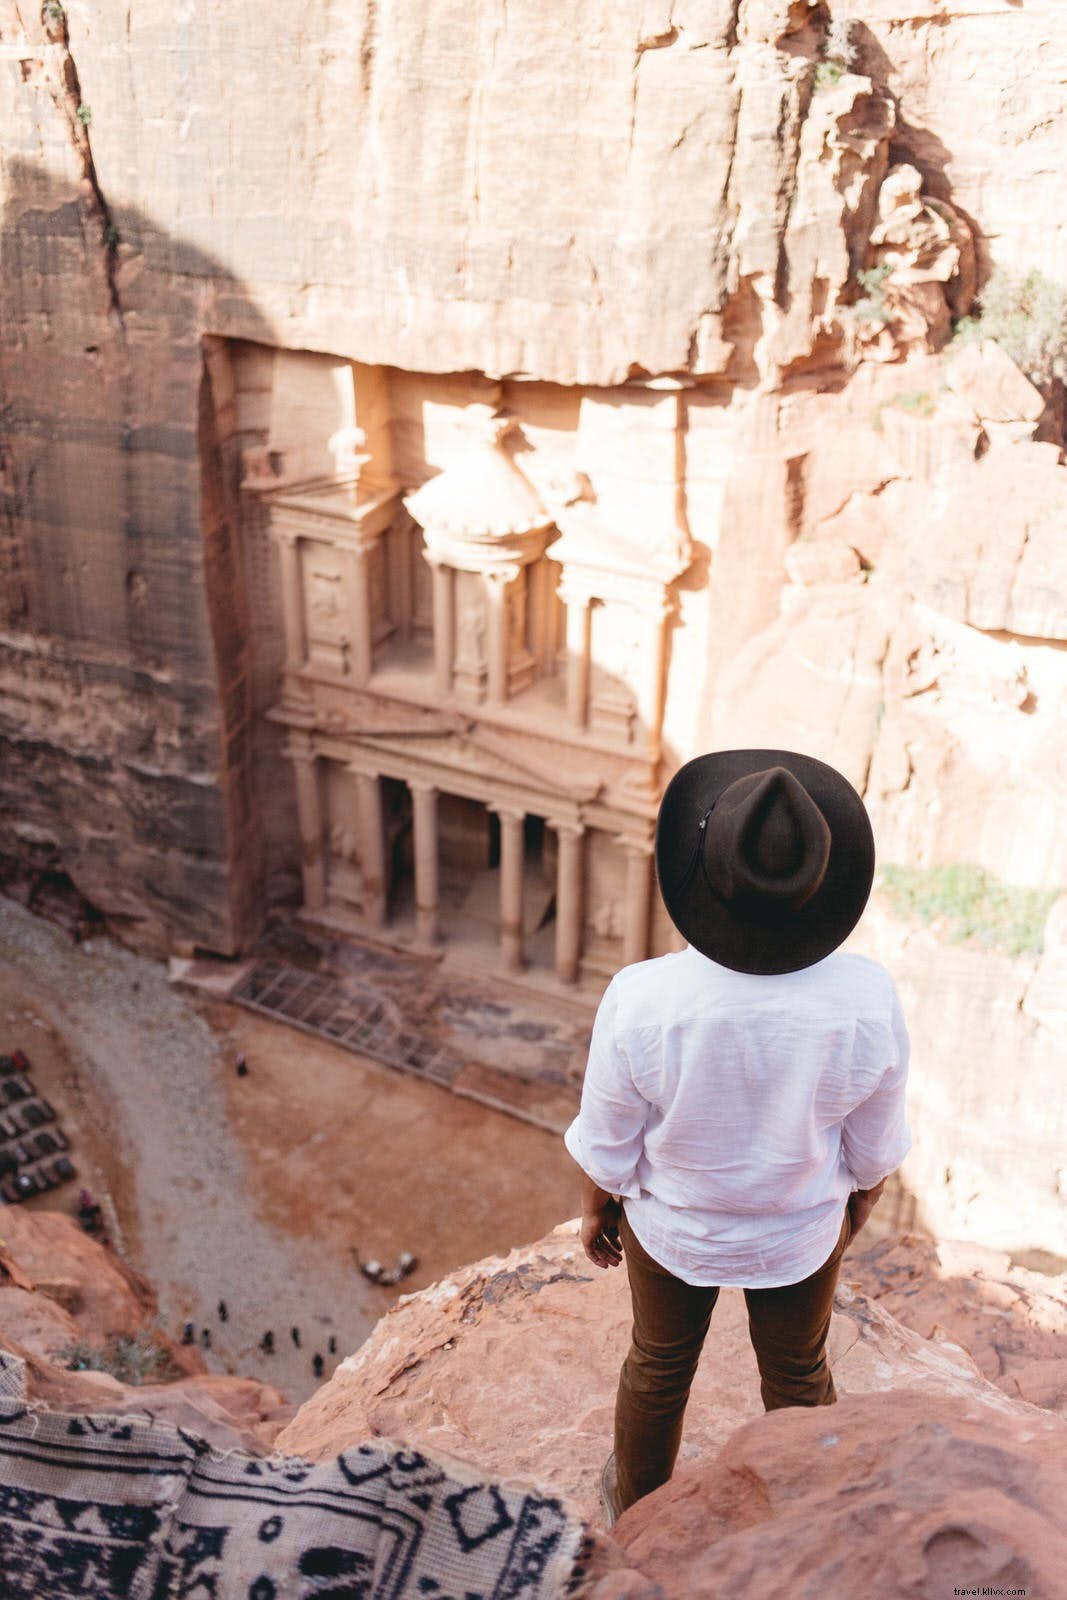 Essential Petra:cara memanfaatkan kunjungan satu hari sebaik-baiknya 